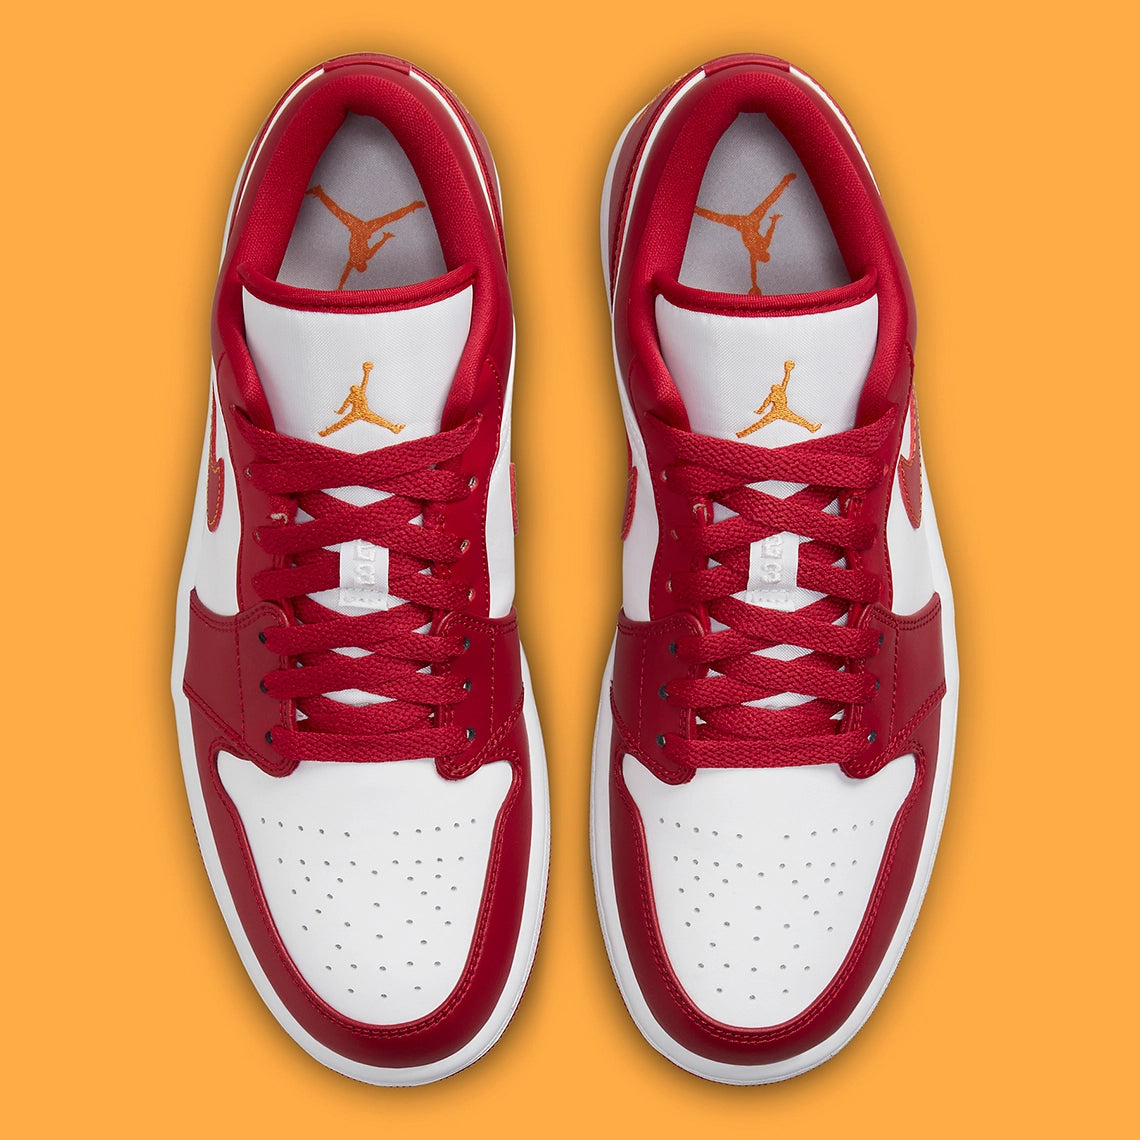 Jordan 1 Low "Cardinal Red"